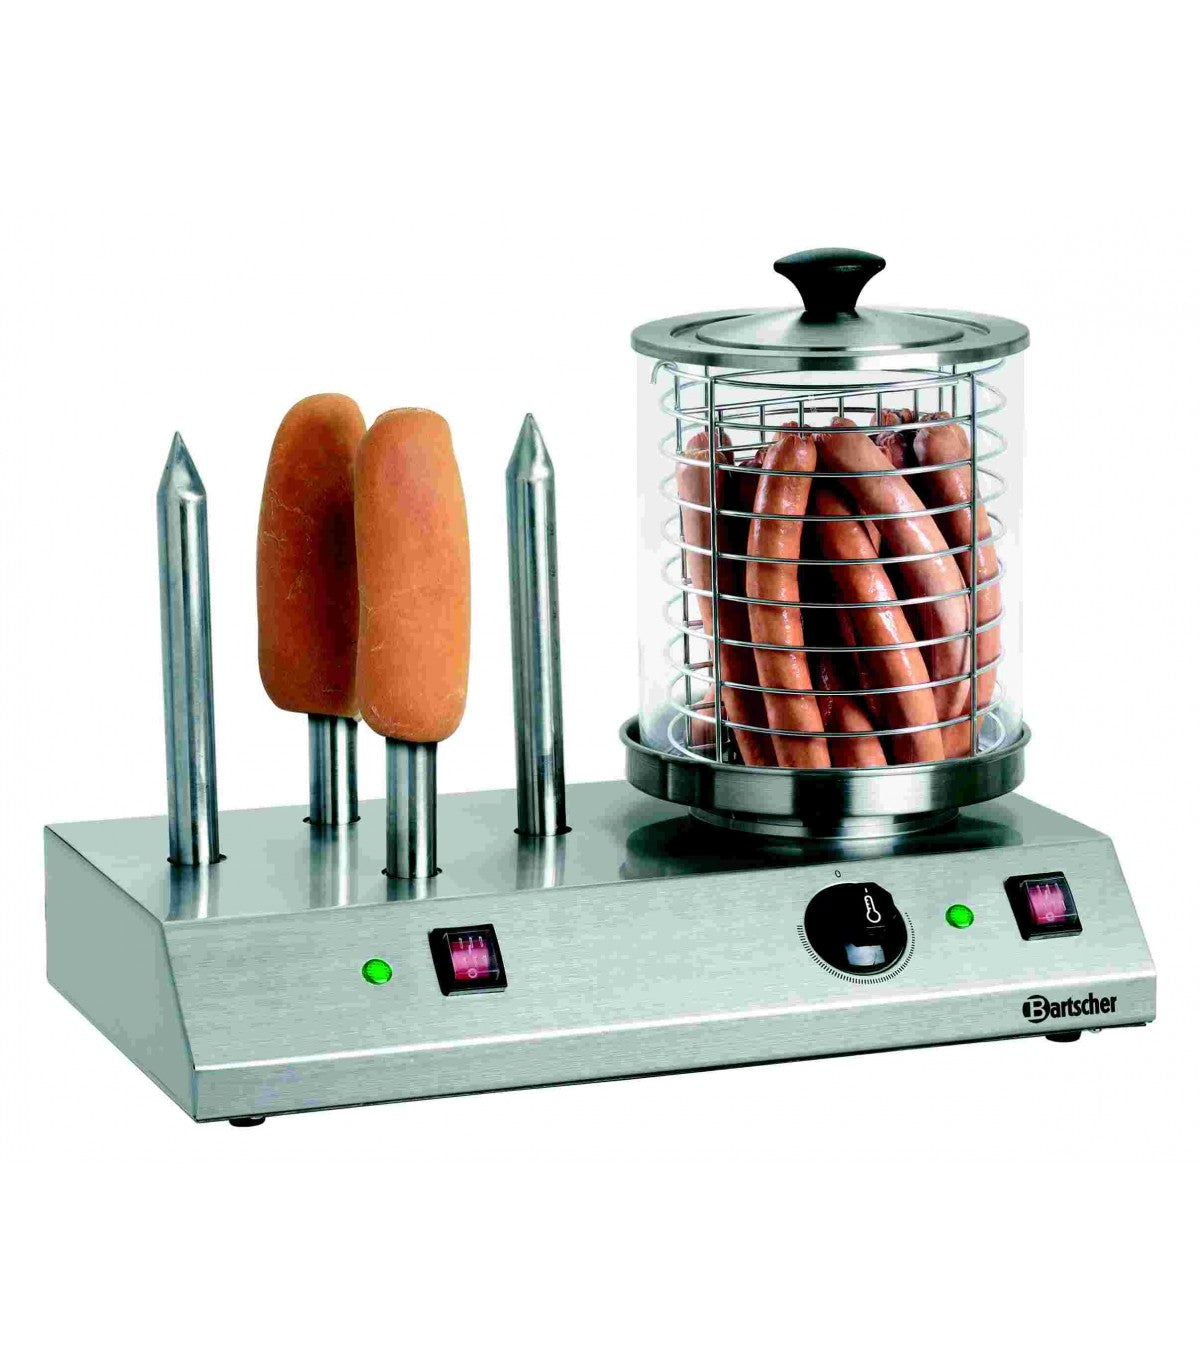 Appareil hot-dogs 4 toasts - Bartscher A120408